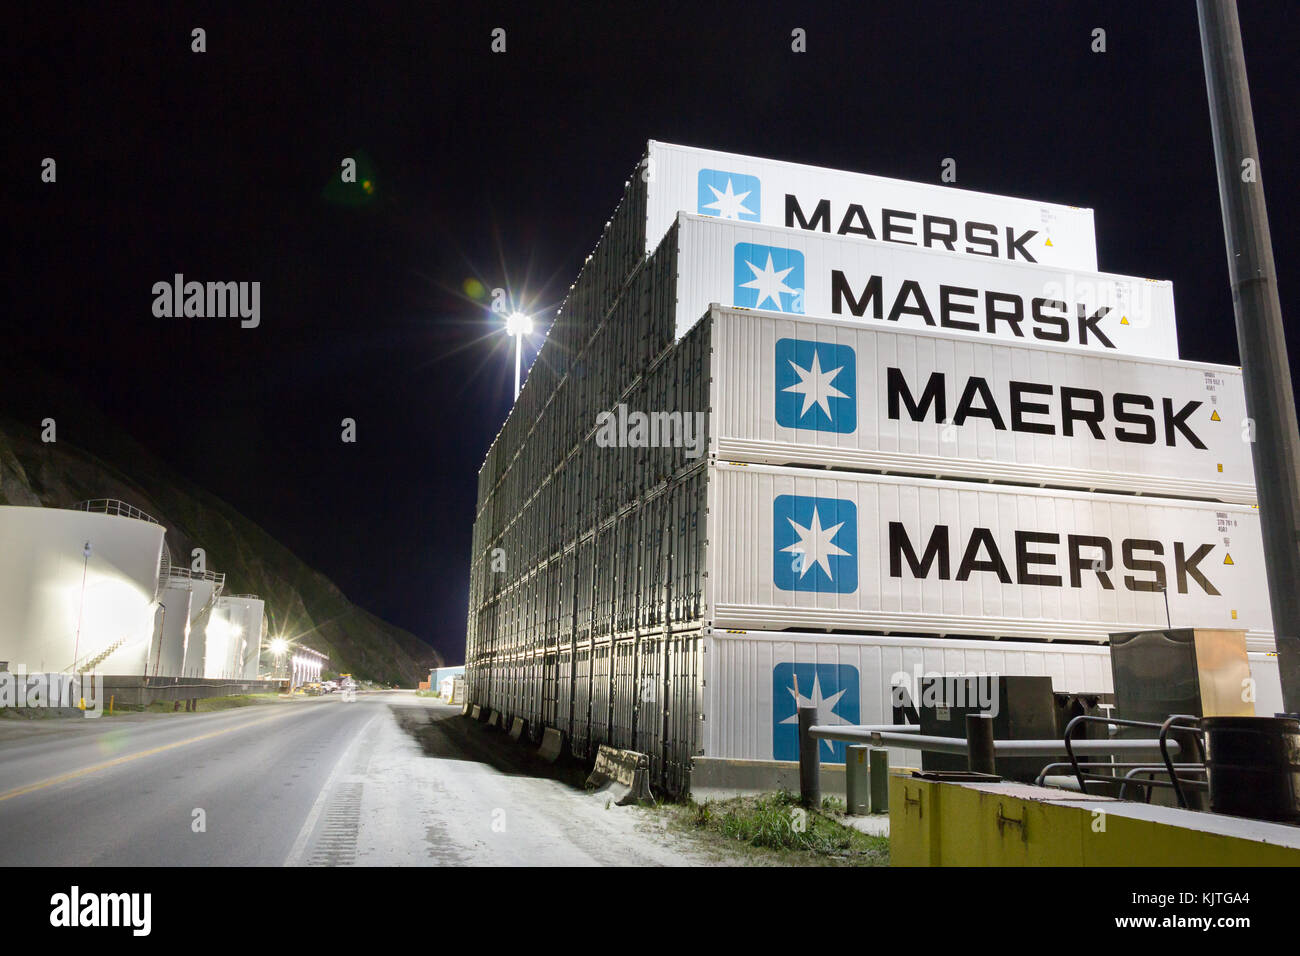 Dutch Harbor, Unalaska, Alaska, USA - août 15th, 2017 : pile de conteneurs de Maersk à billyhoo road at night, Unalaska, Alaska. Banque D'Images